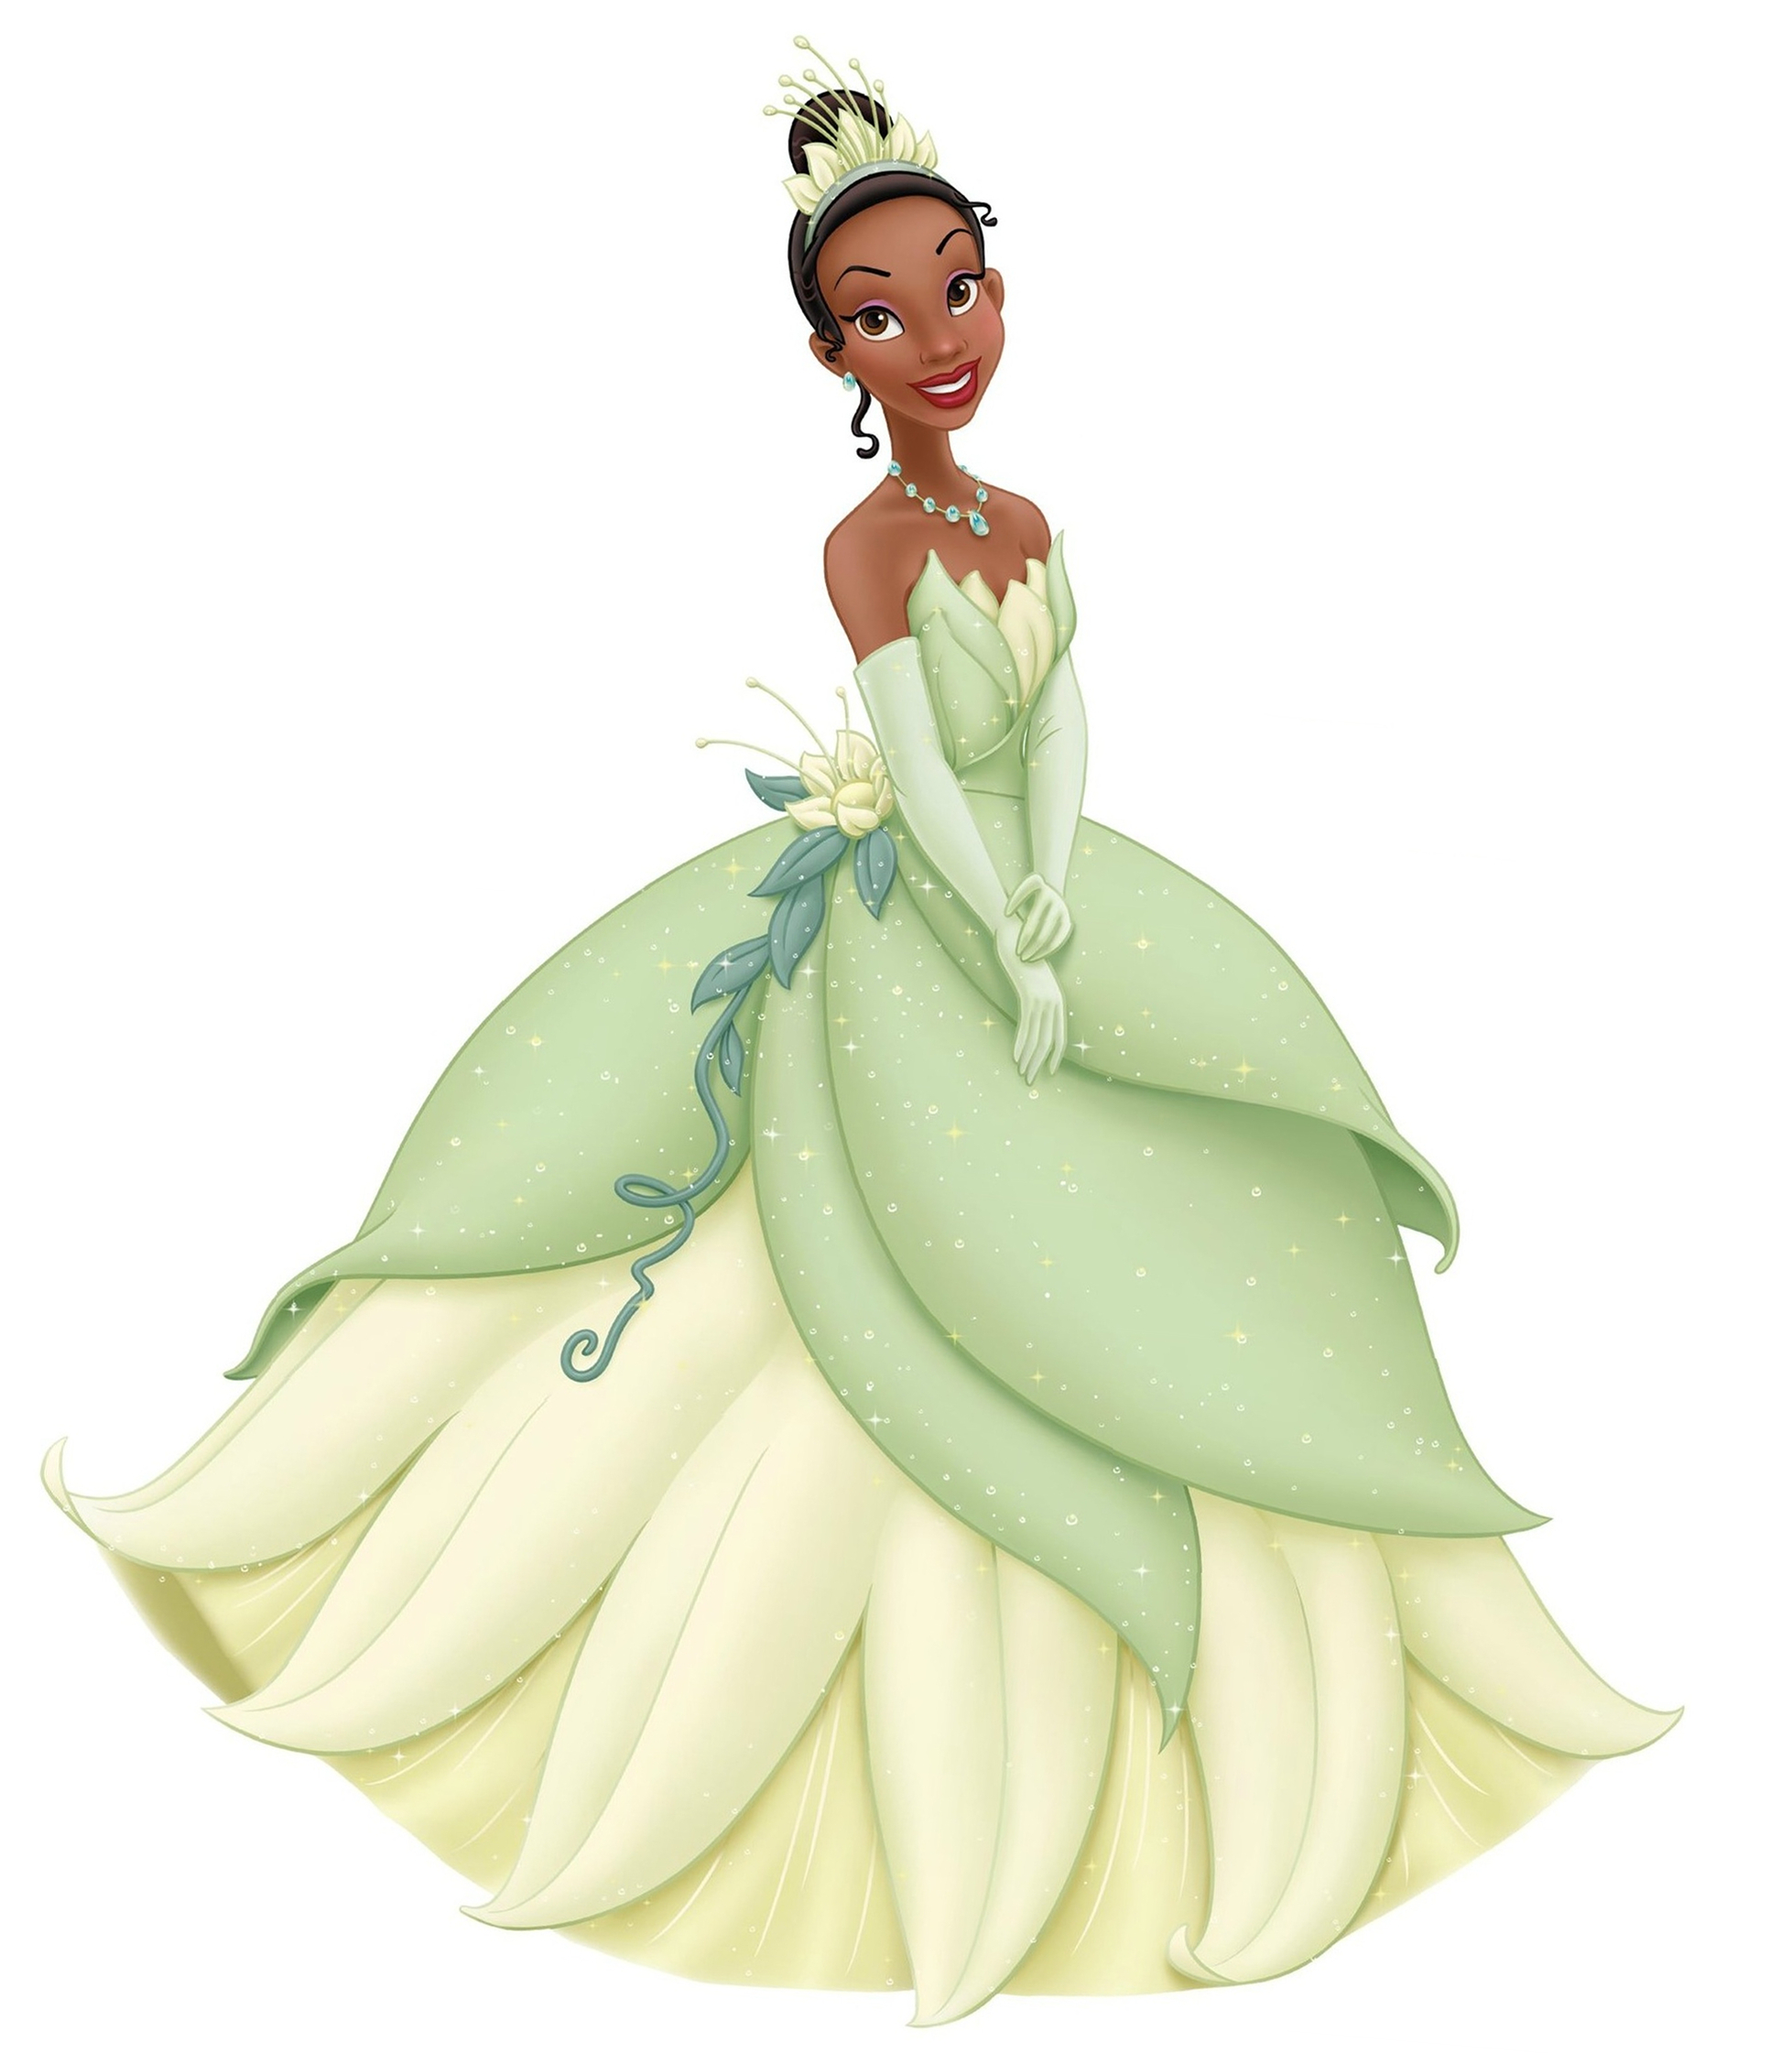 Princess Tiana. Jack Miller's Webpage of Disney